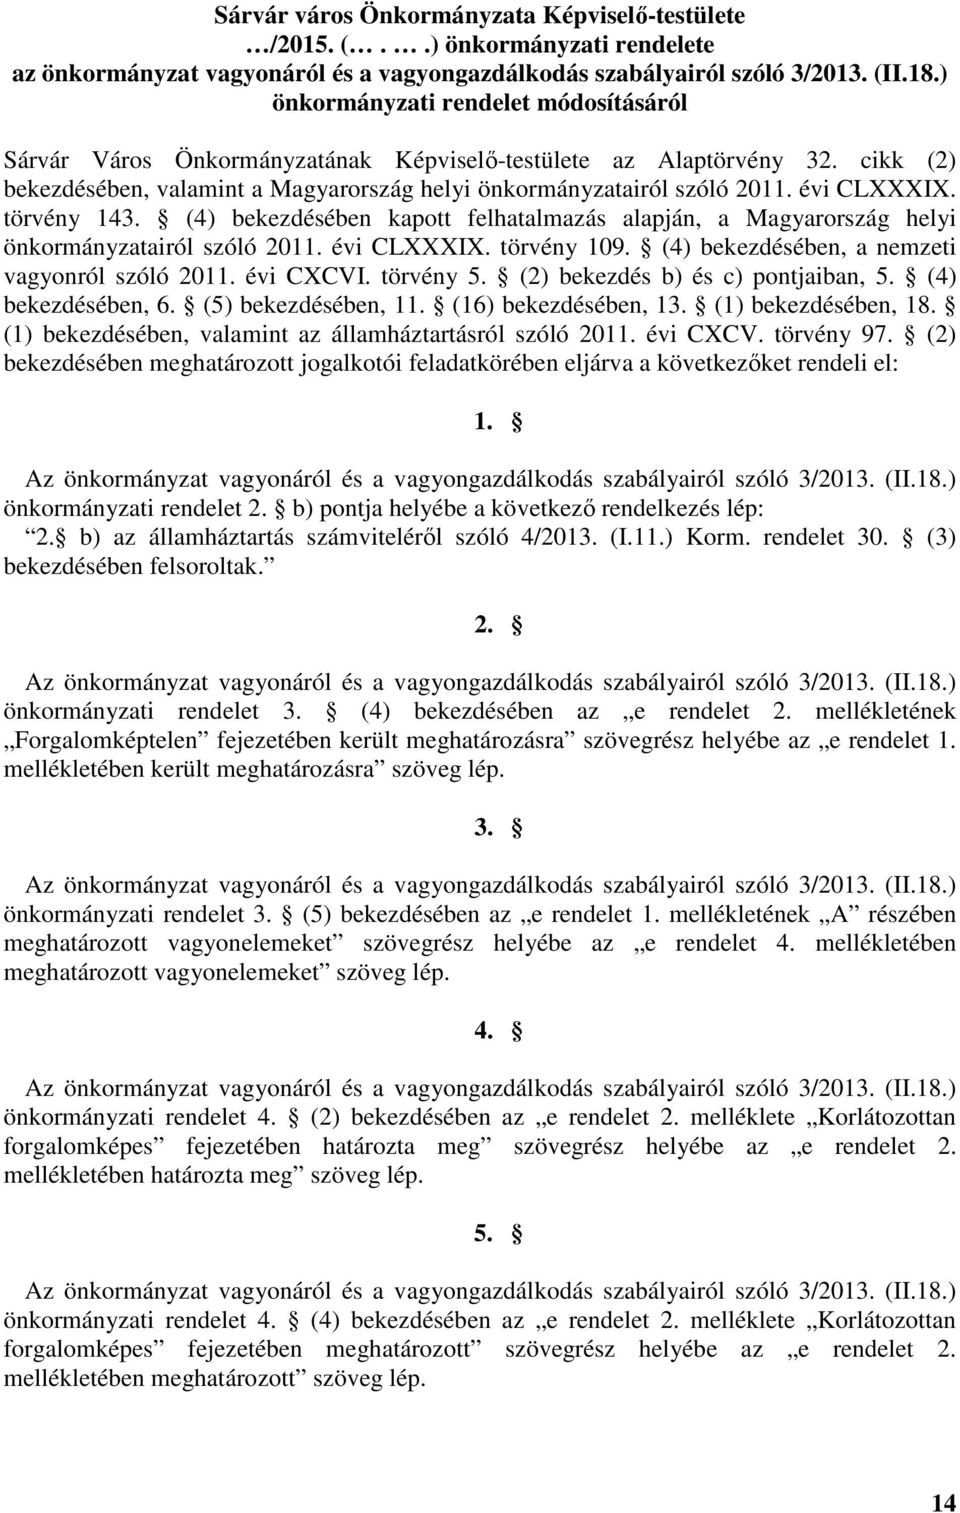 évi CLXXXIX. törvény 143. (4) bekezdésében kapott felhatalmazás alapján, a Magyarország helyi önkormányzatairól szóló 2011. évi CLXXXIX. törvény 109. (4) bekezdésében, a nemzeti vagyonról szóló 2011.